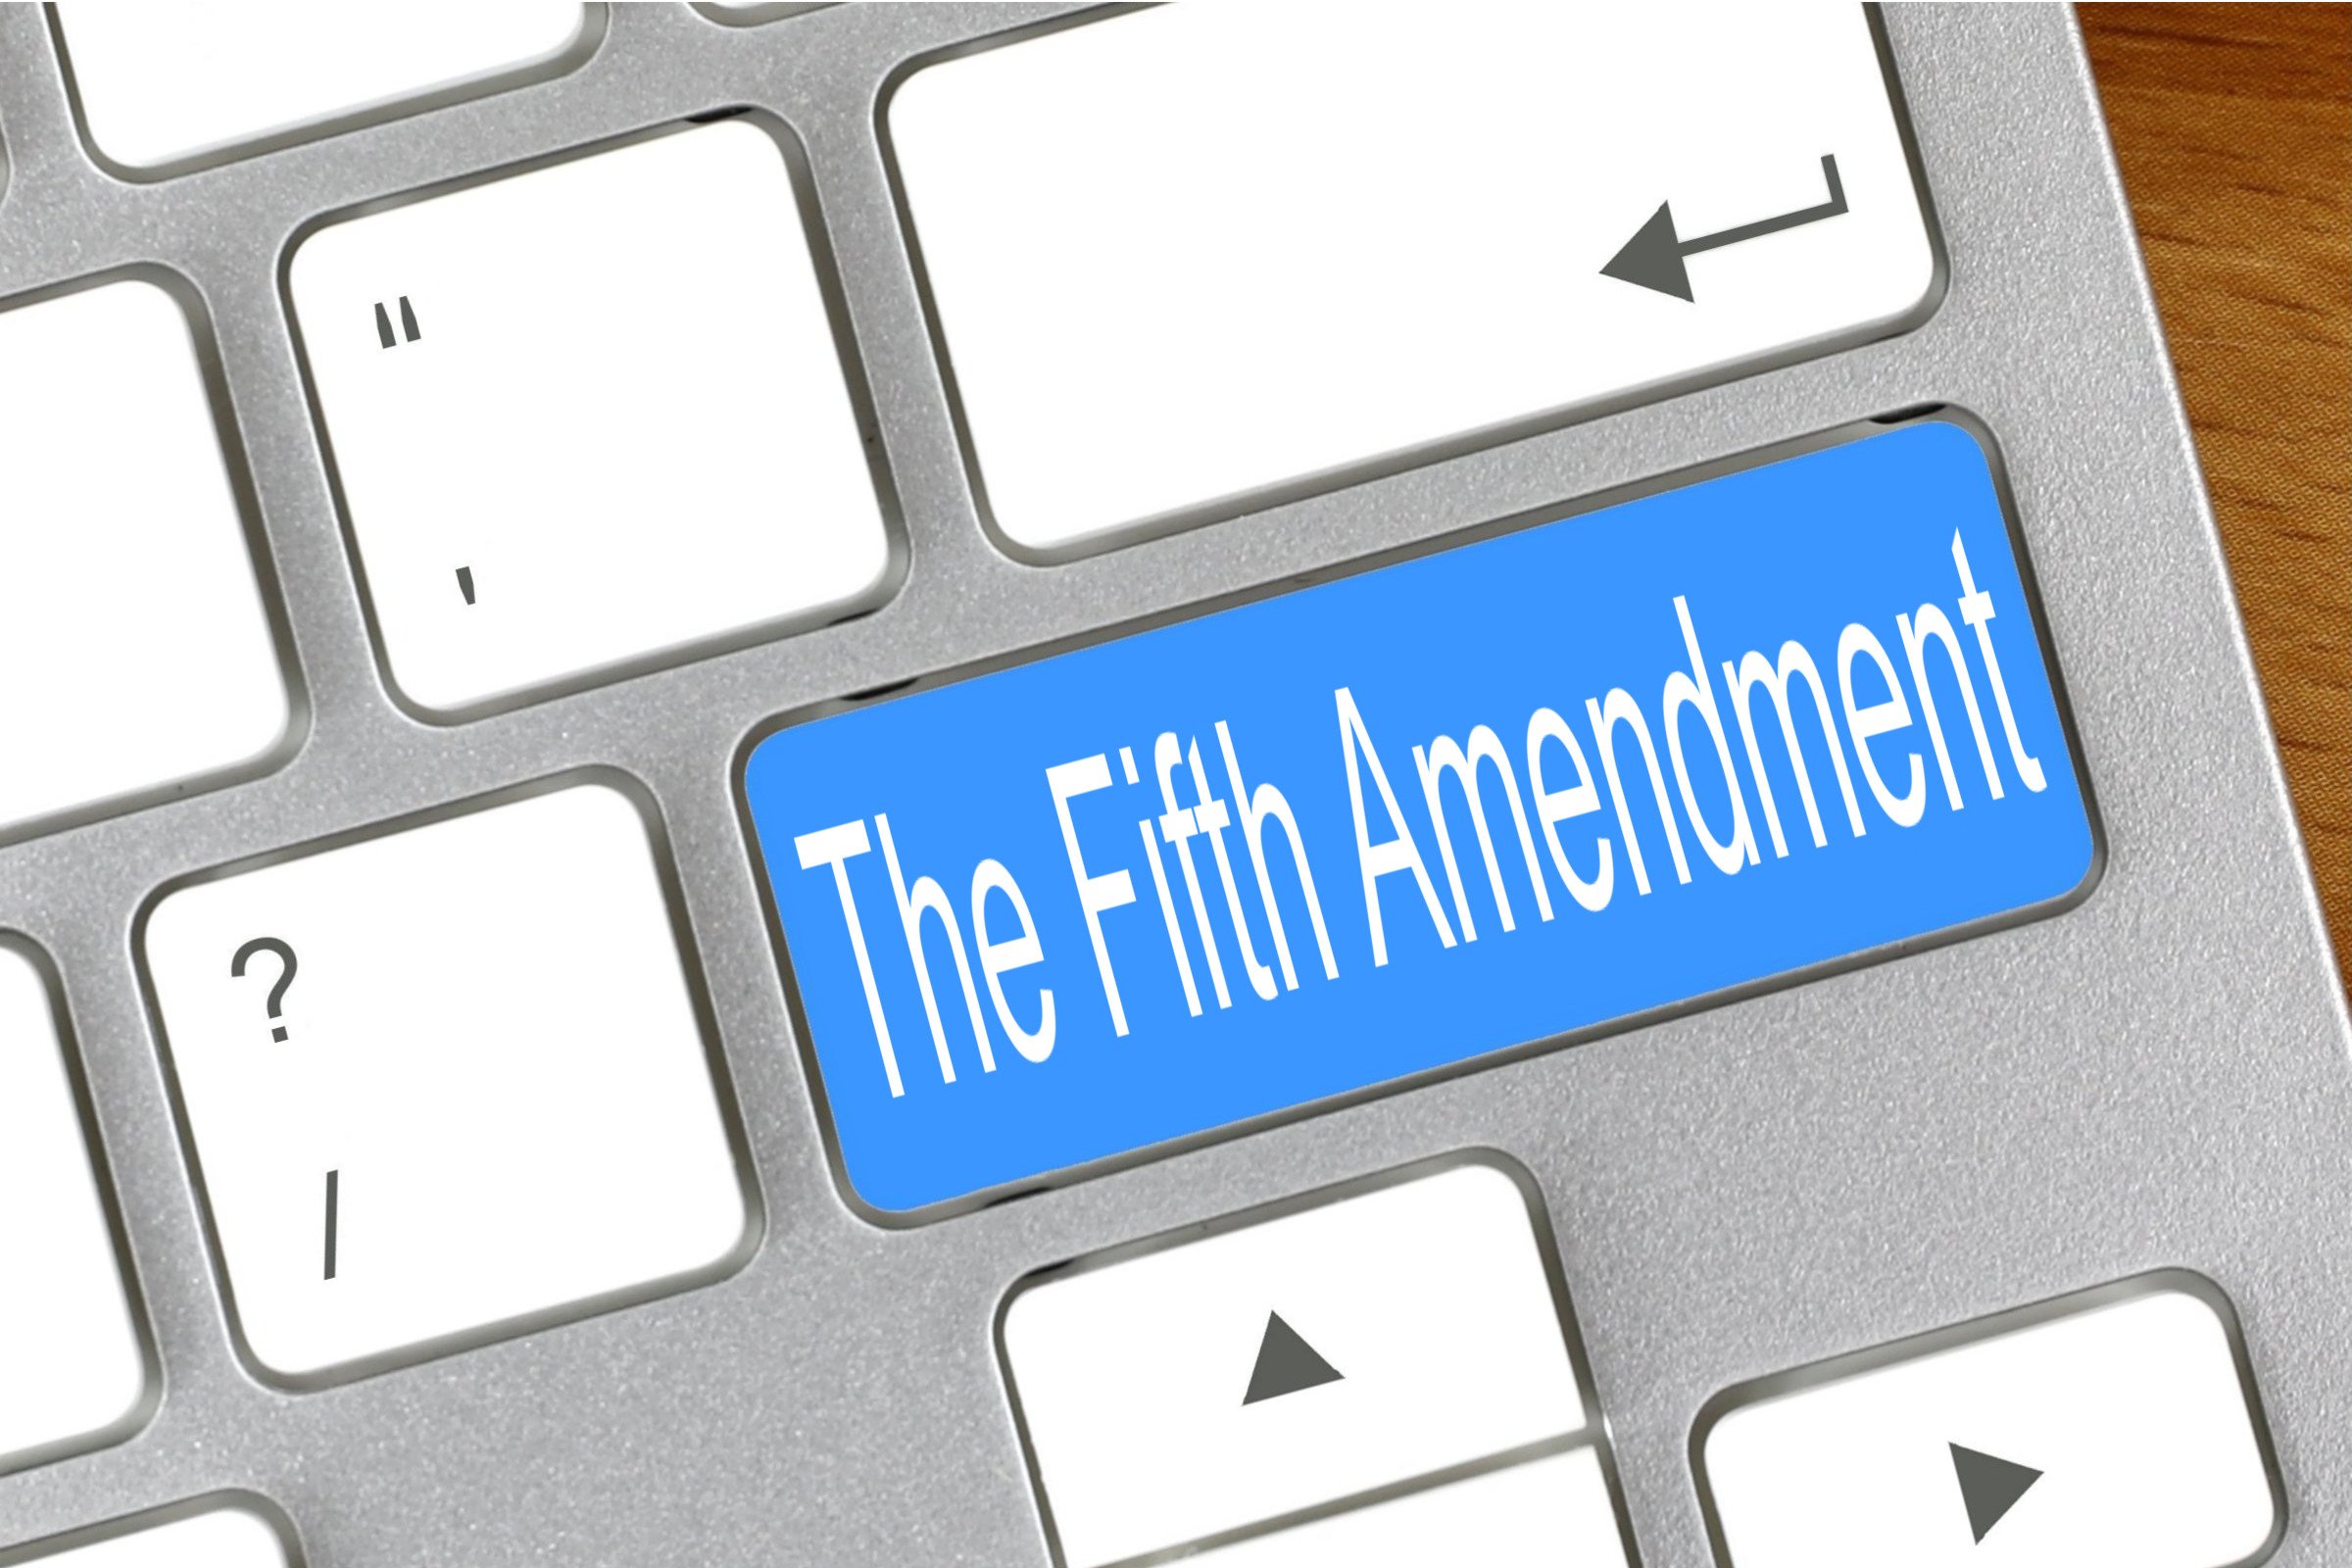 the fifth amendment